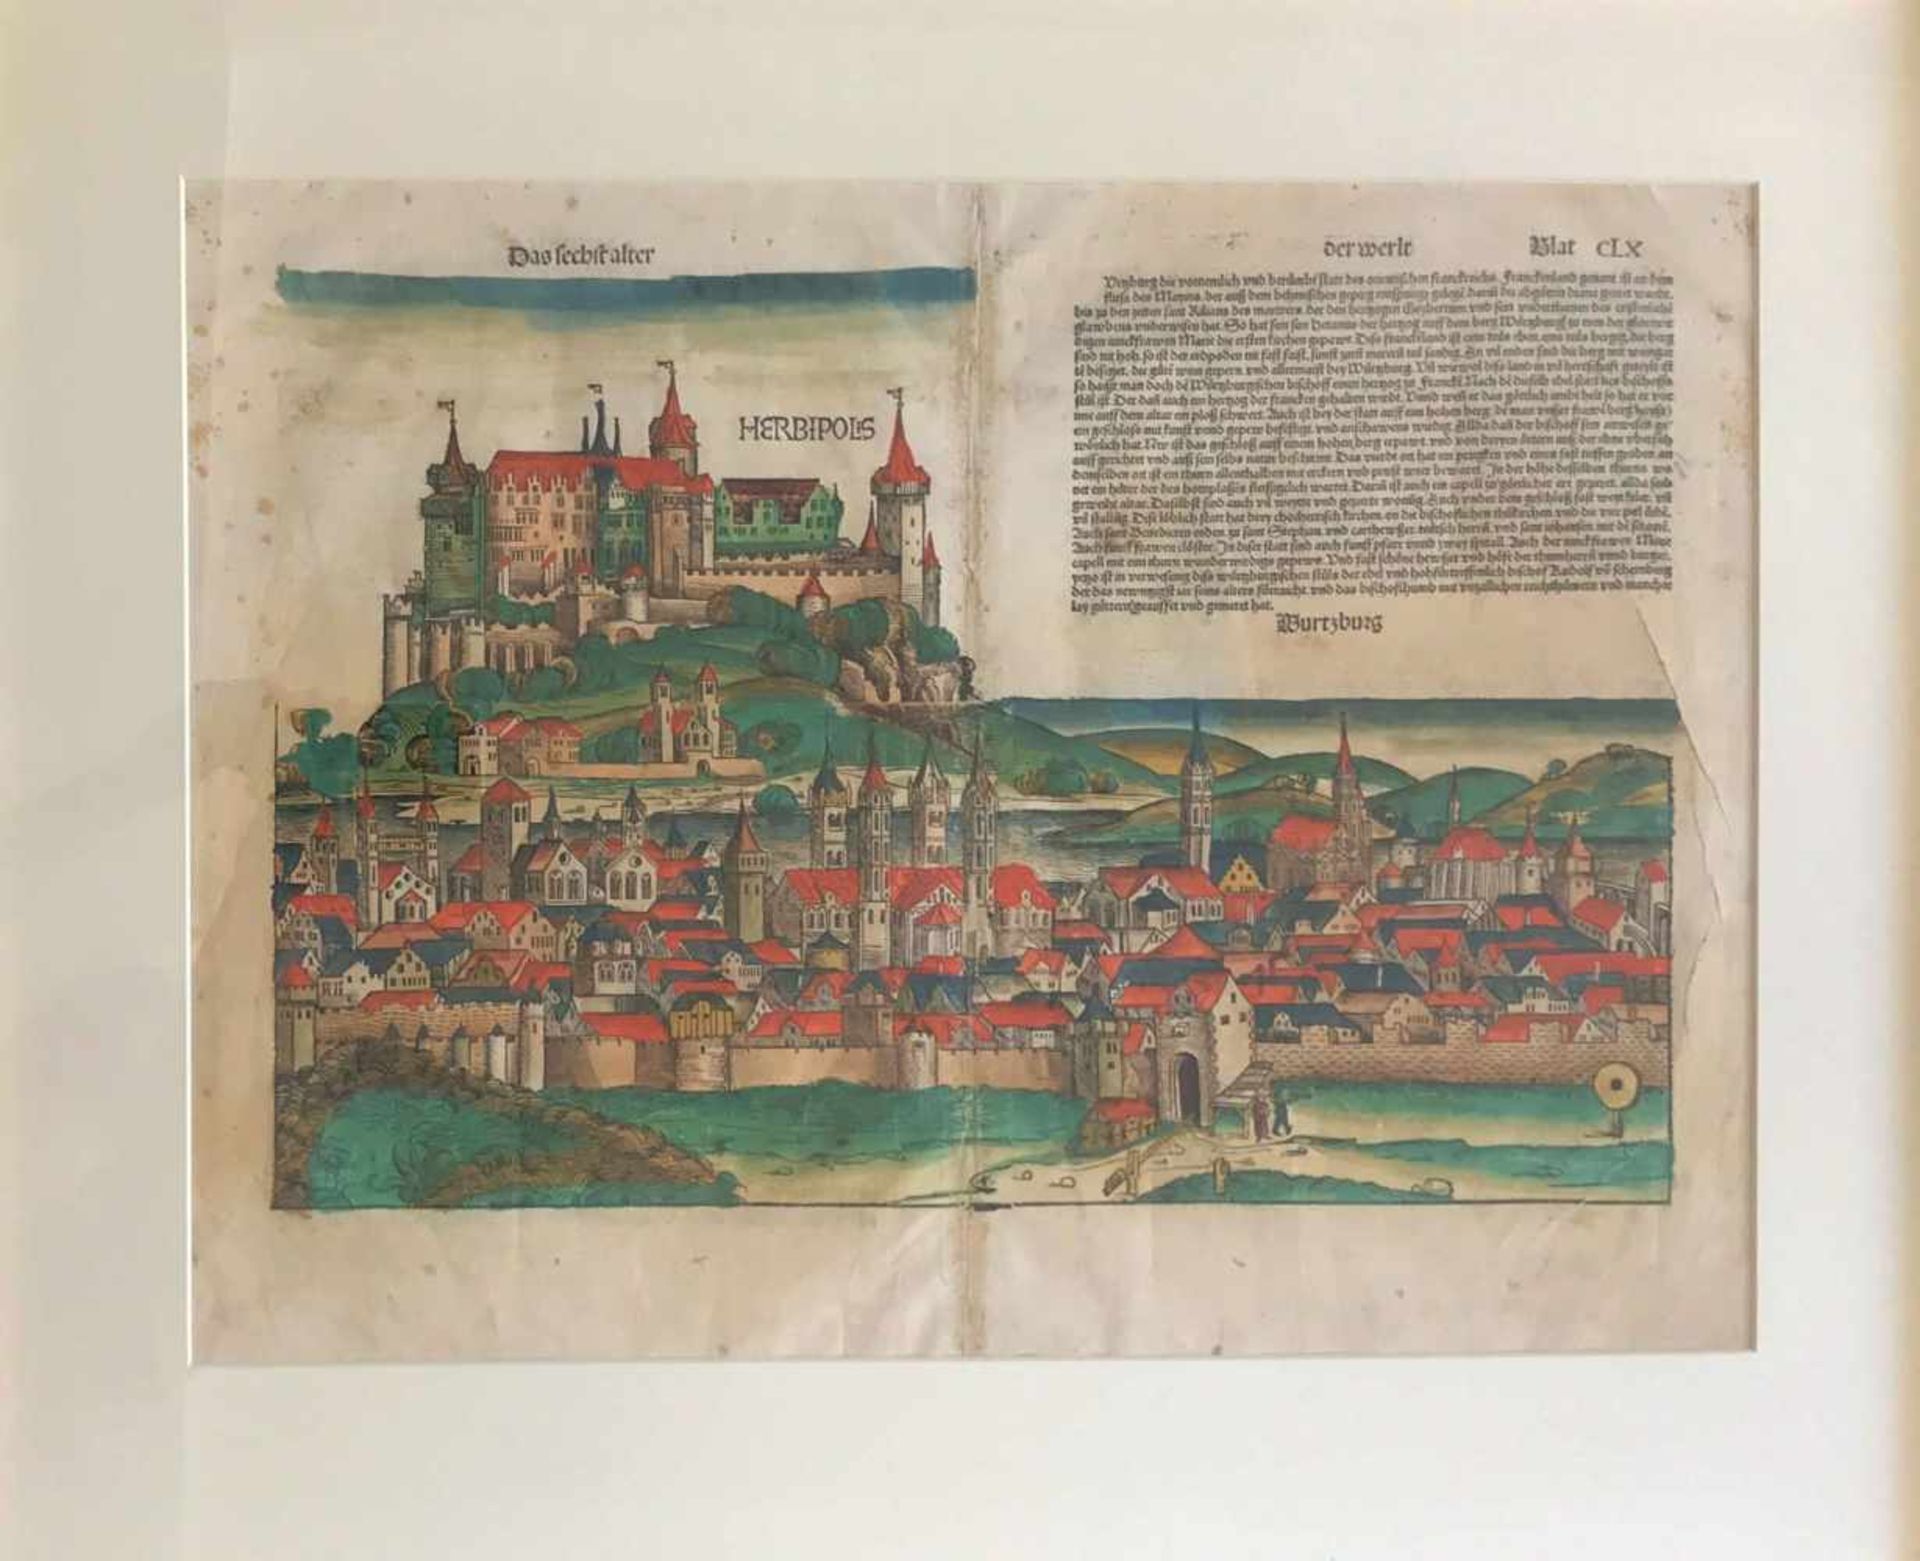 Schedel'sche Weltchronik, Herbipolis Wurtzburg, kolorierter Kupferstich, betitel Das sechst alter - Bild 4 aus 4